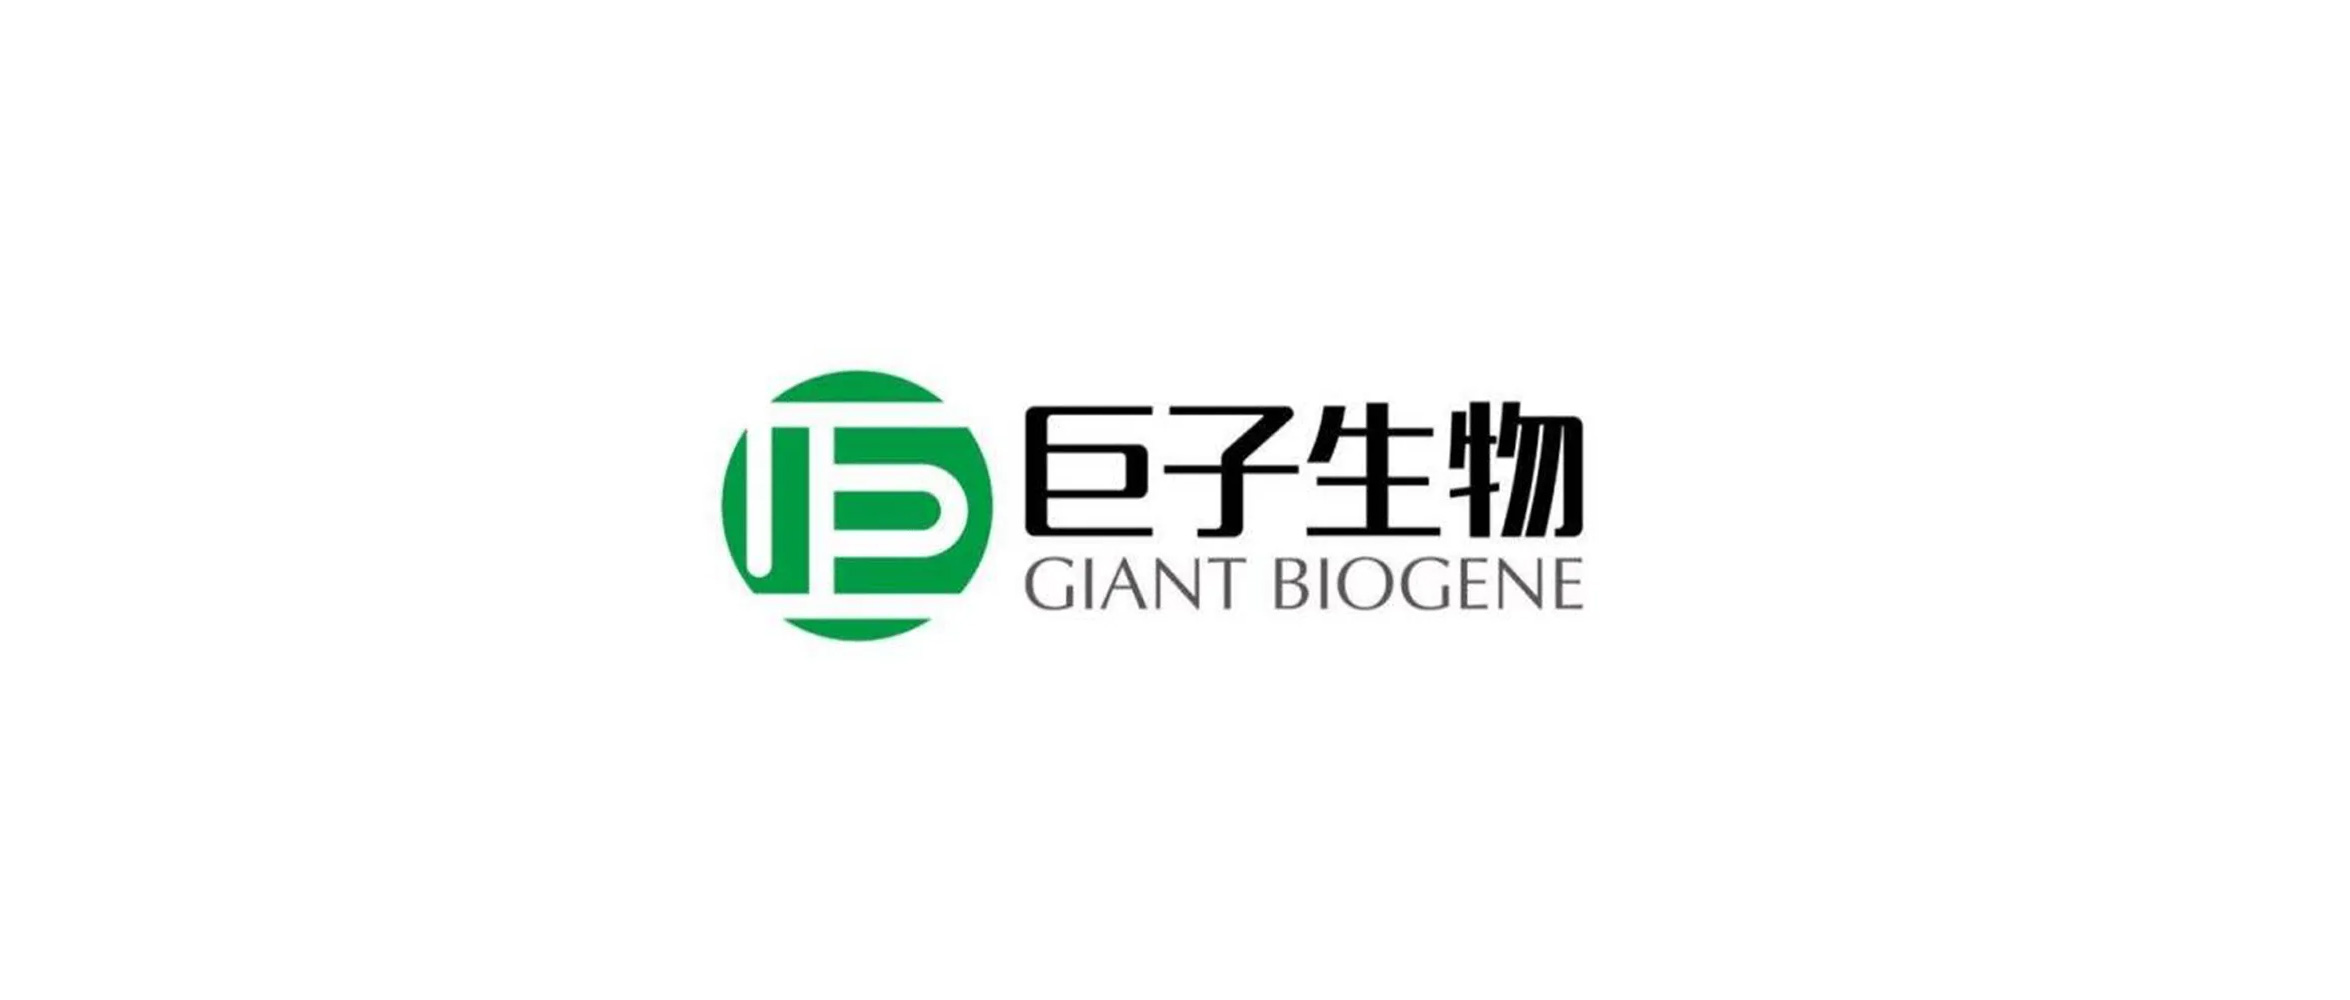 西安巨子生物西安巨子生物：打造国内领先的生物医药企业